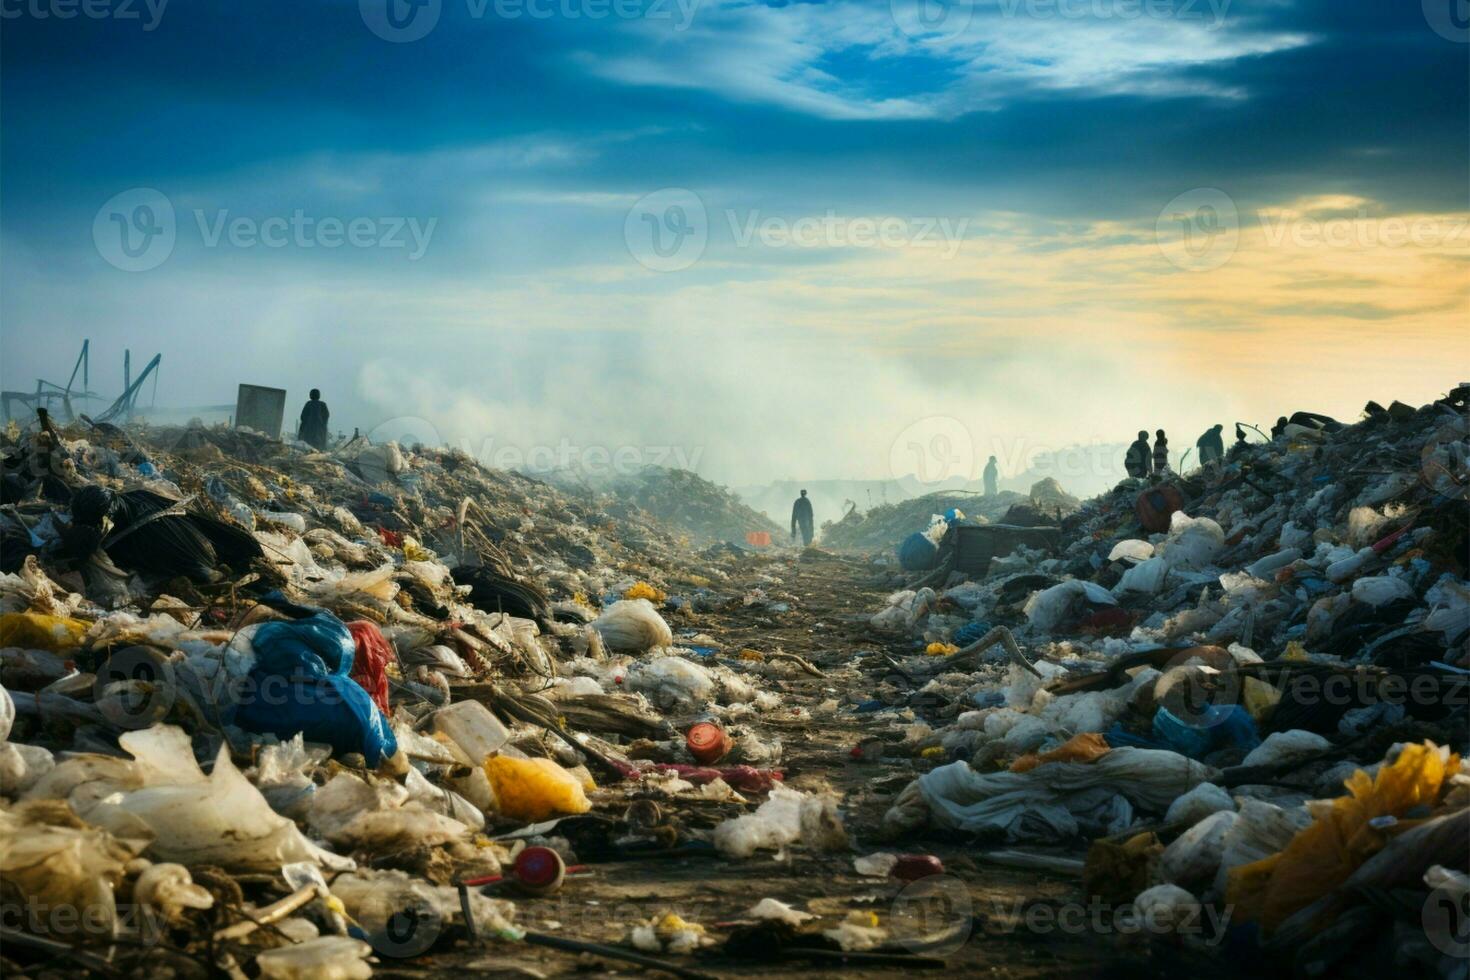 stortplaats beeldt af de milieu uitdaging van huishouden verspilling en verontreiniging ai gegenereerd foto